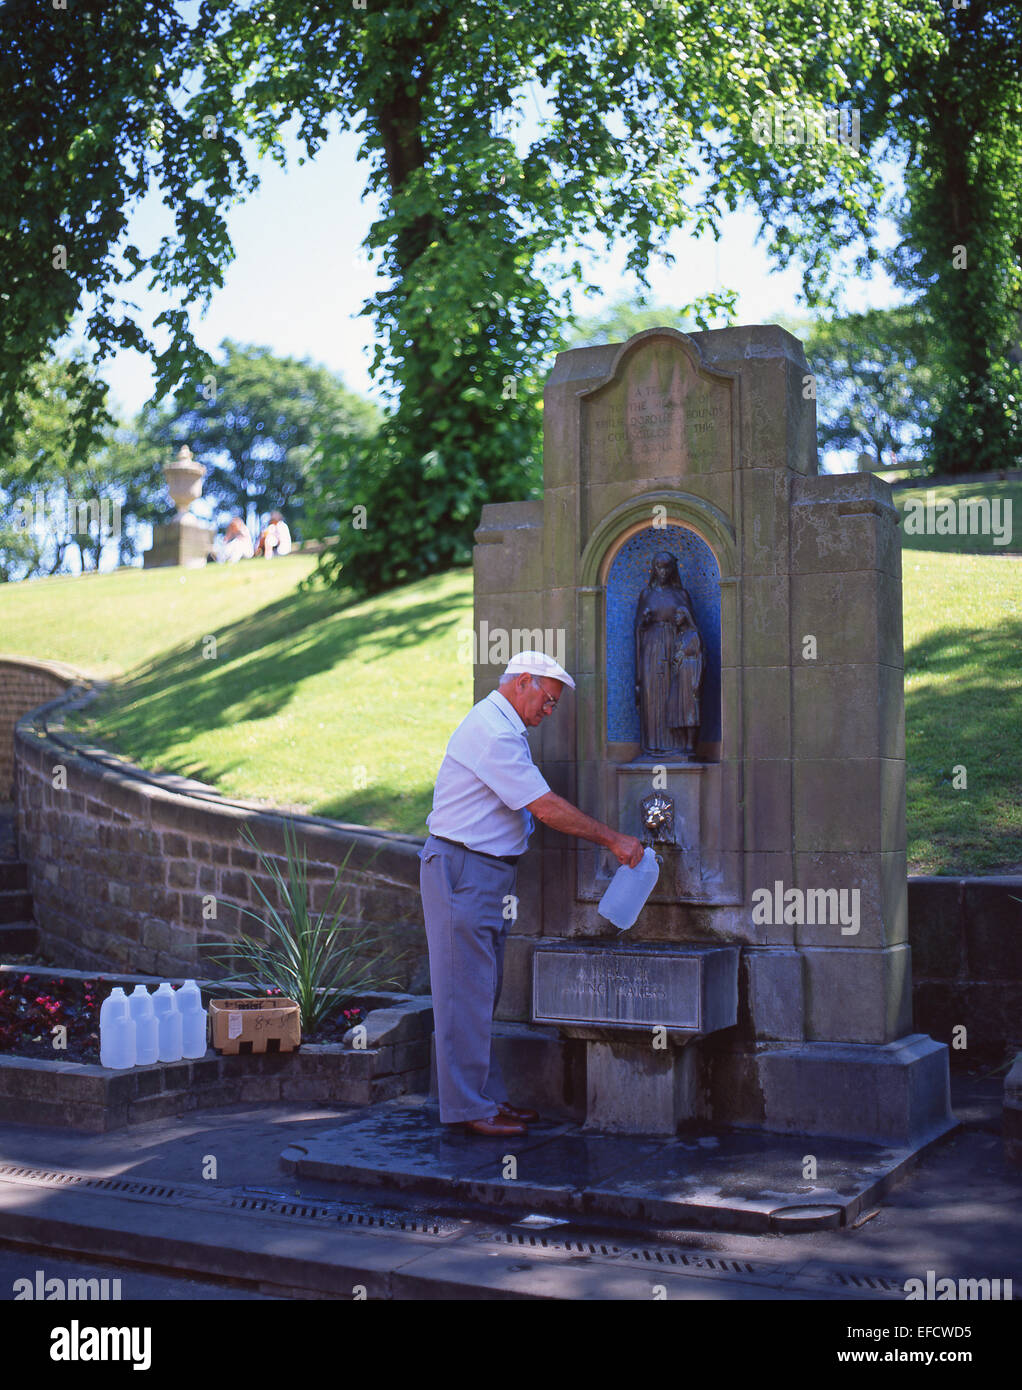 L'homme de remplir les bouteilles avec de l'eau à St Ann's Well, Buxton, Derbyshire, Angleterre, Royaume-Uni Banque D'Images